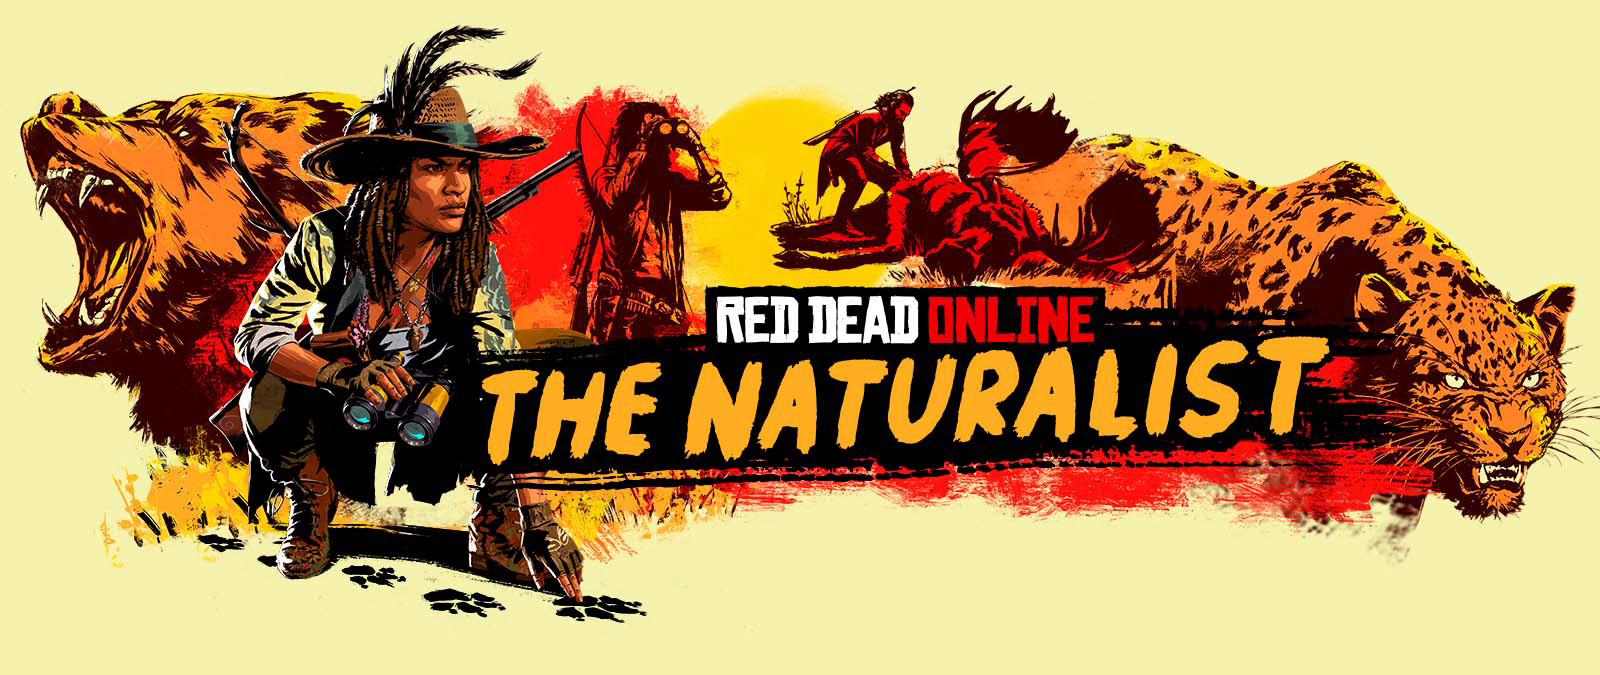 Red Dead Online. The Naturalist. Postavy stopujúce a loviace veľké zvieratá.